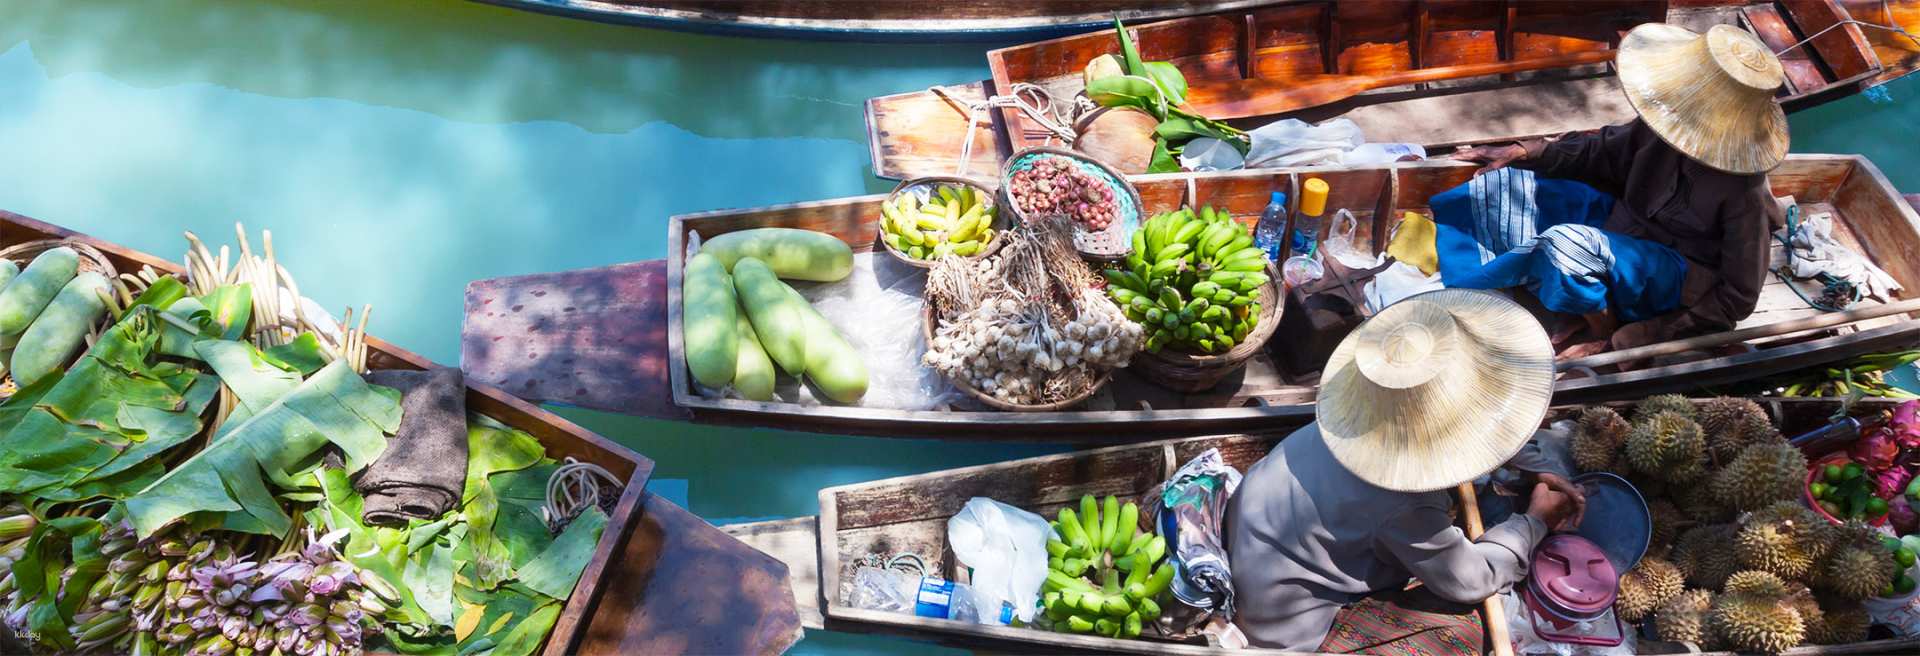 泰國-曼谷丹嫩莎朵水上市場&美功鐵道市集一日遊